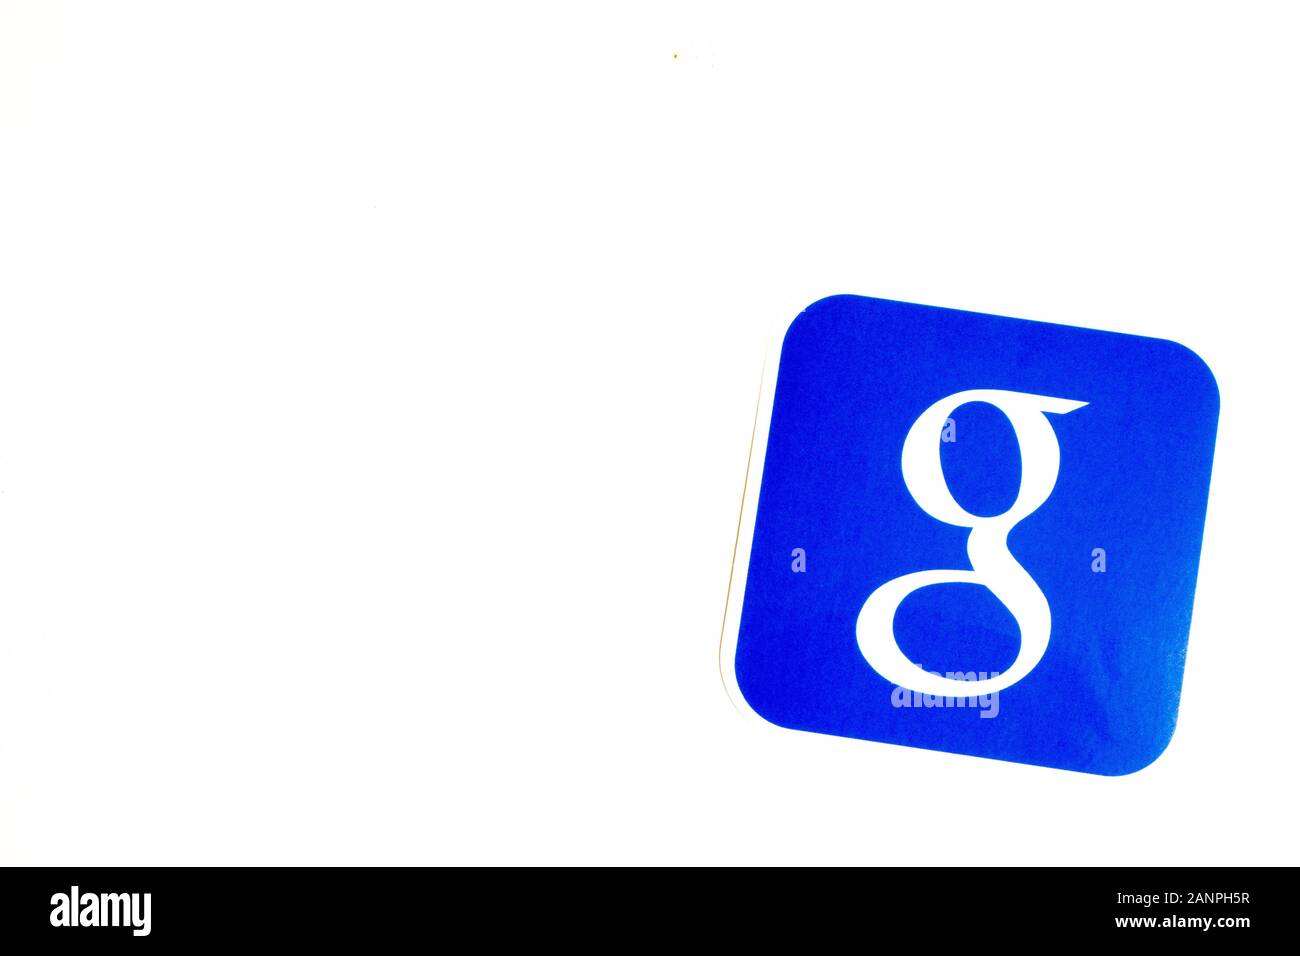 Los Angeles, Californie, États-Unis - 17 janvier 2020: Logo Google sur fond blanc avec espace de copie. Icône des médias sociaux, éditorial illustratif Banque D'Images